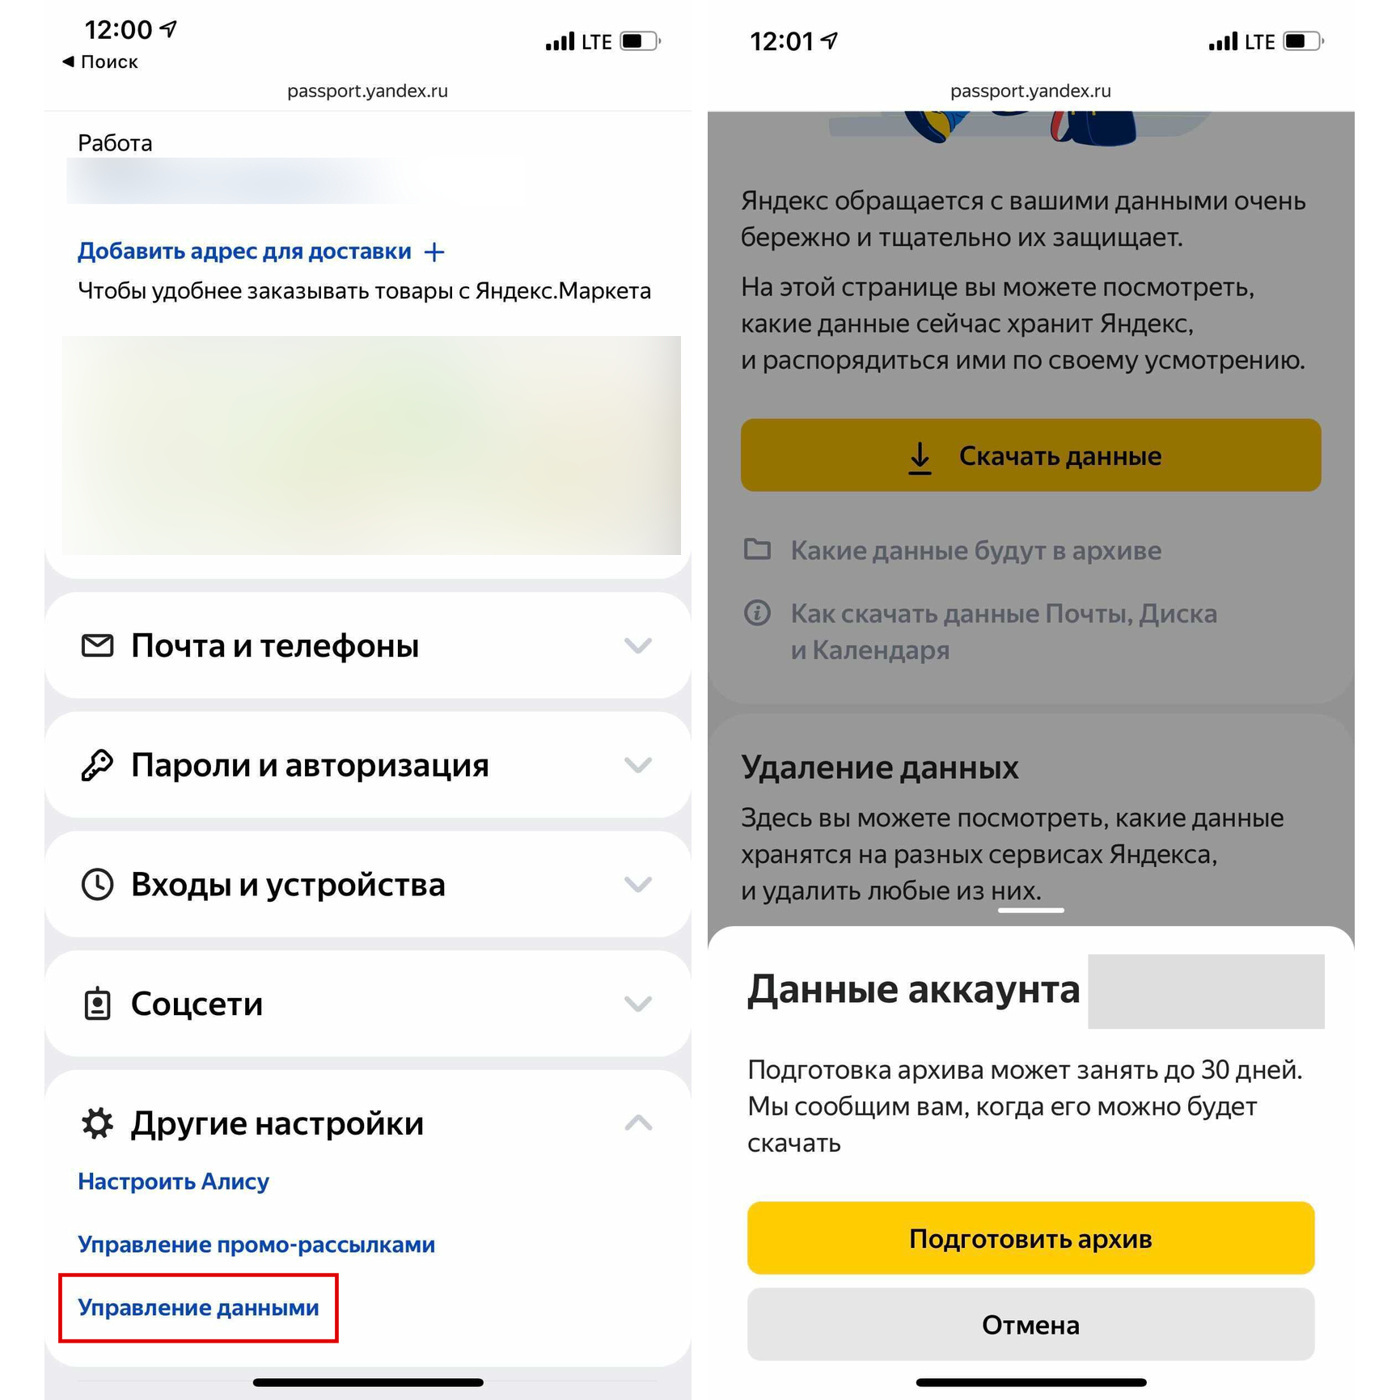 Как Удалить Фото Организации В Яндекс